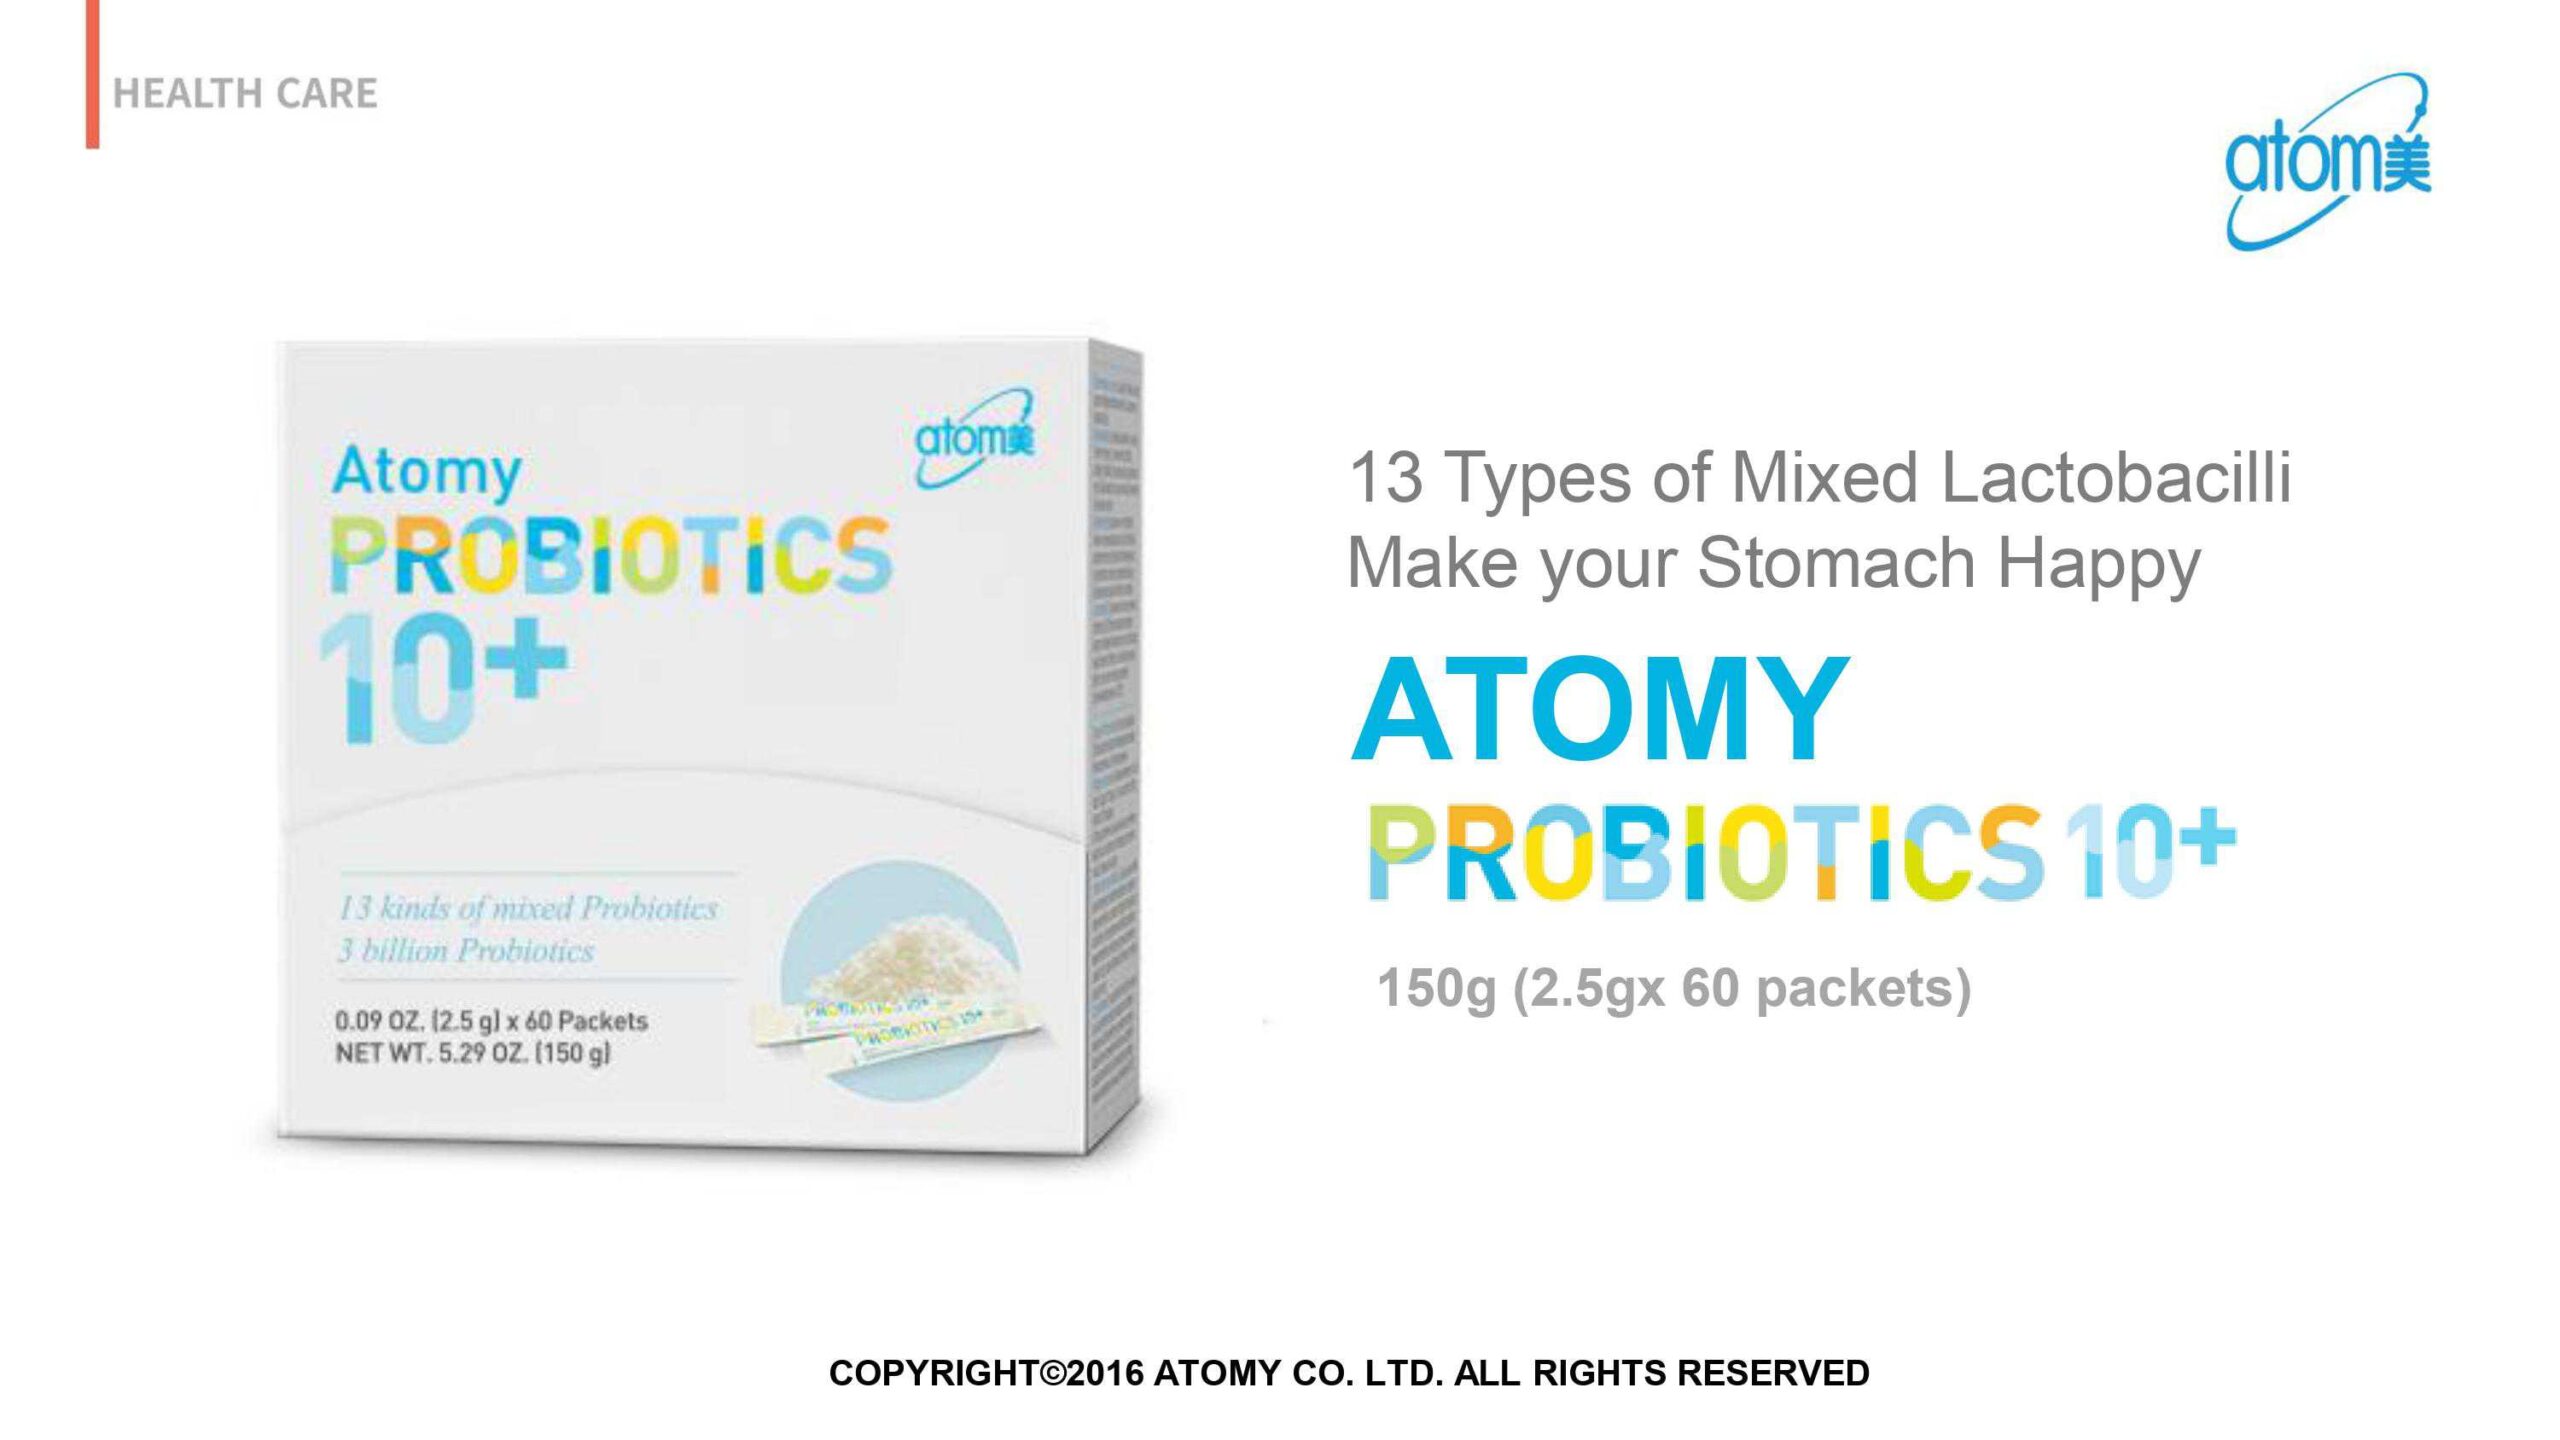 ATOMY Probiotics 10+ Plus